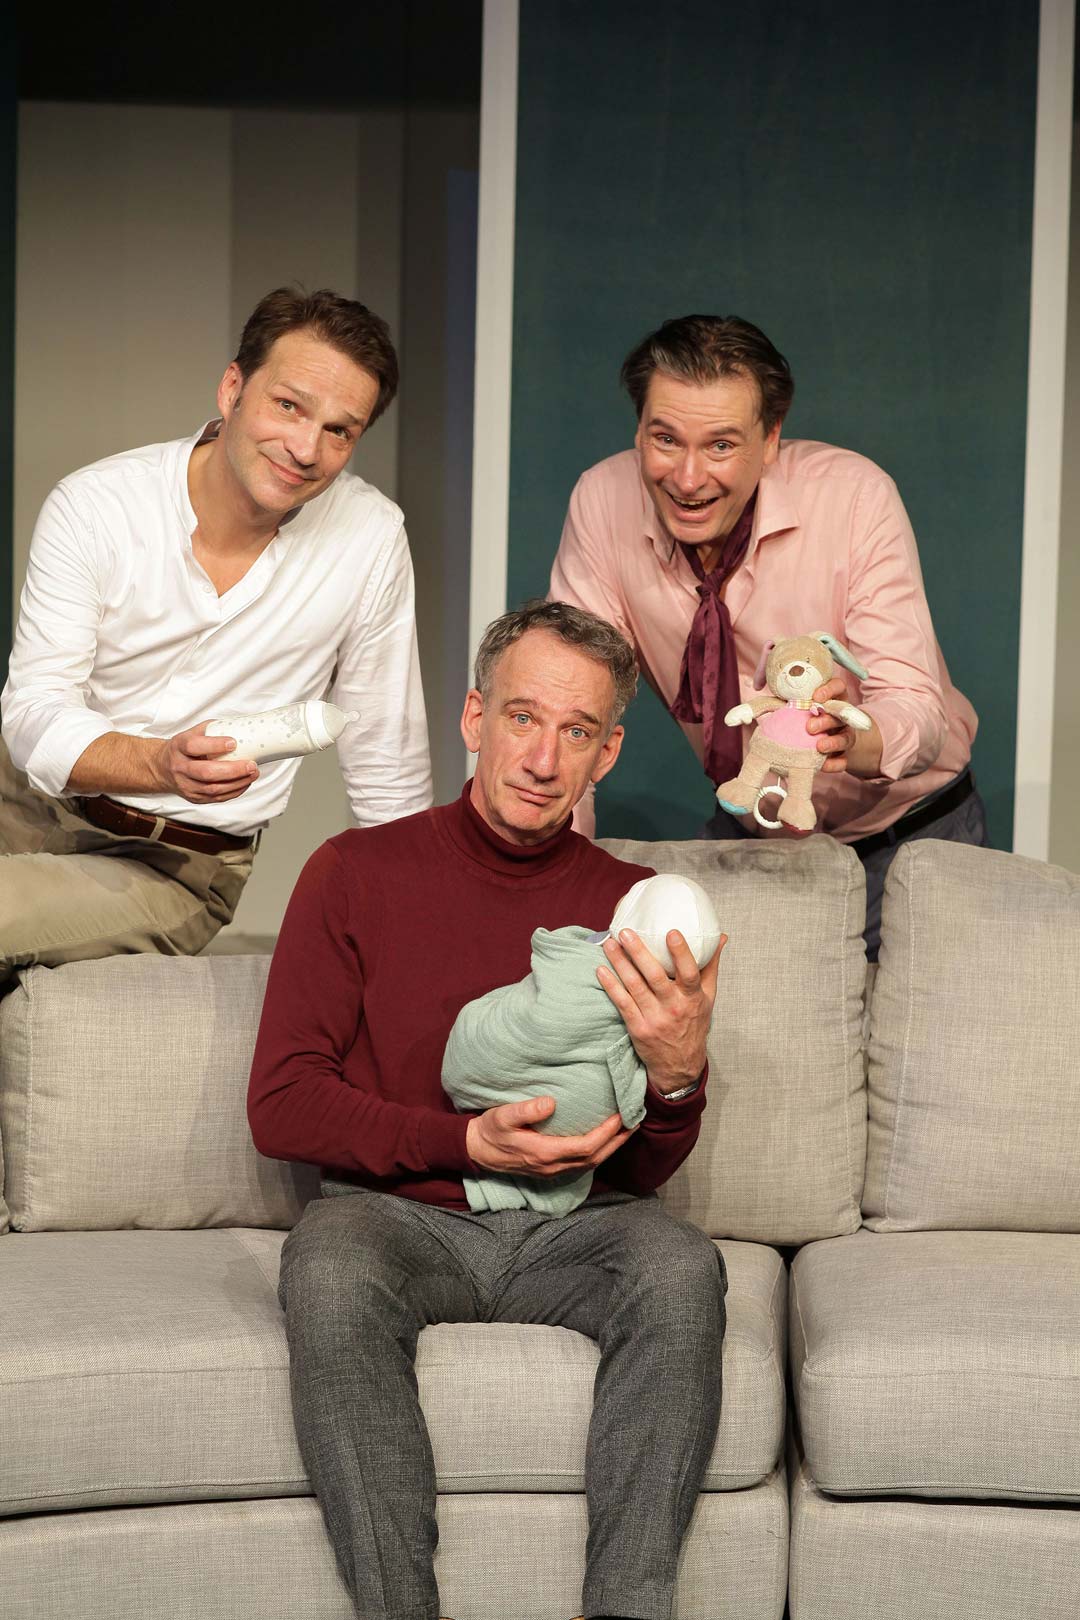 Drei Männer, davon einer auf der Couch sitzend, das Baby im Arm, während die anderen zwei sich leicht auf die Couch lehnen